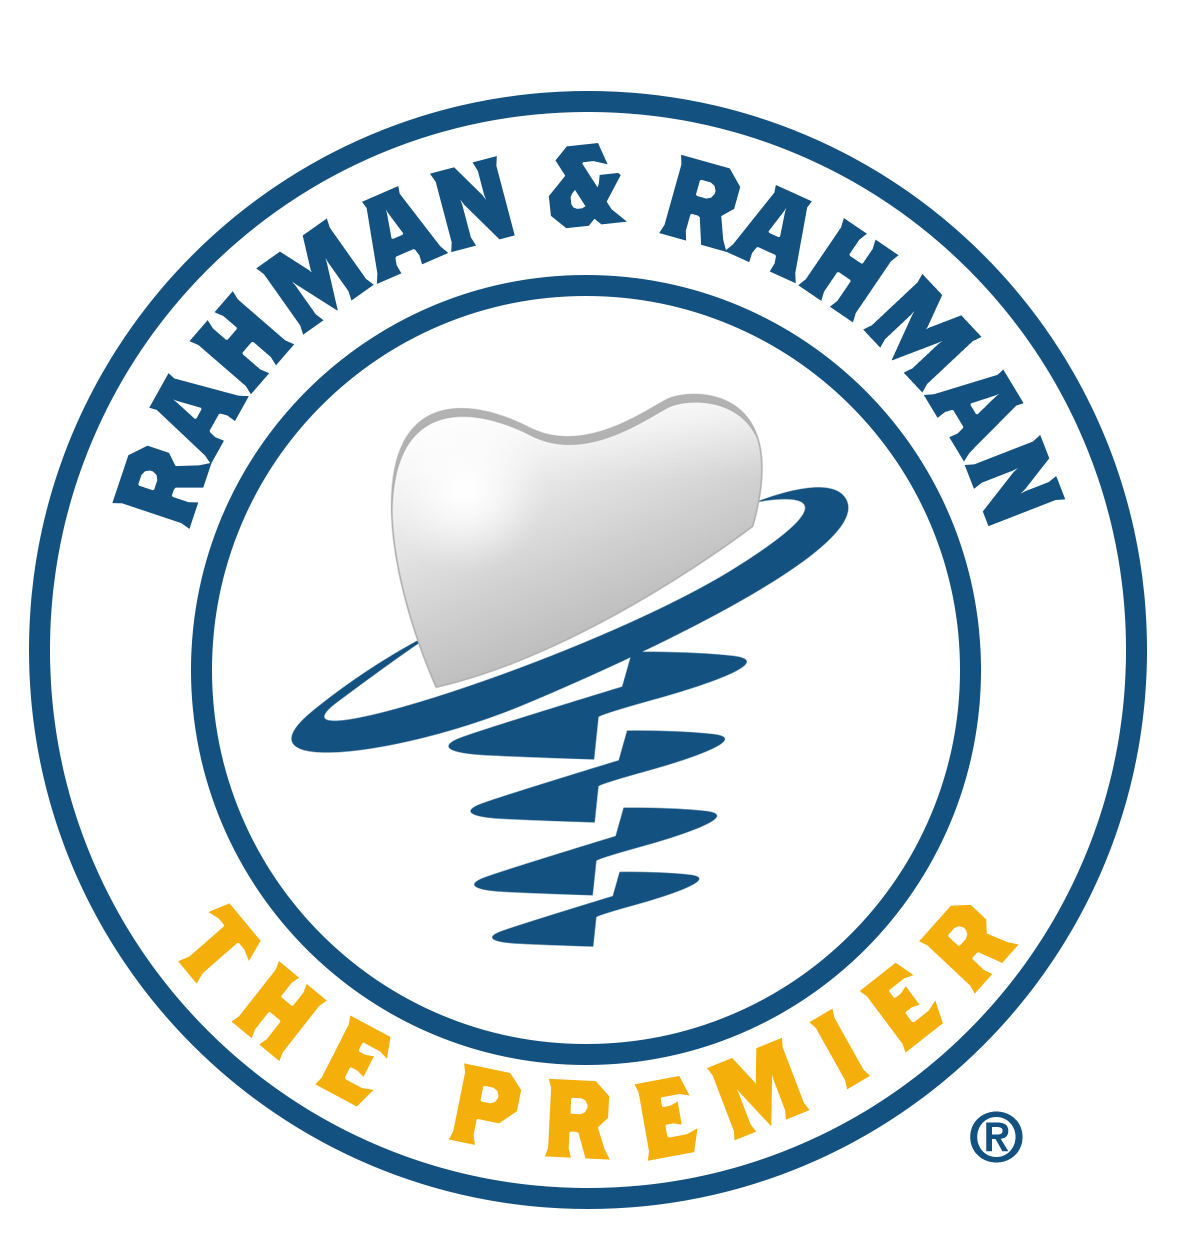 Rahman and Rahman the Premier Dental